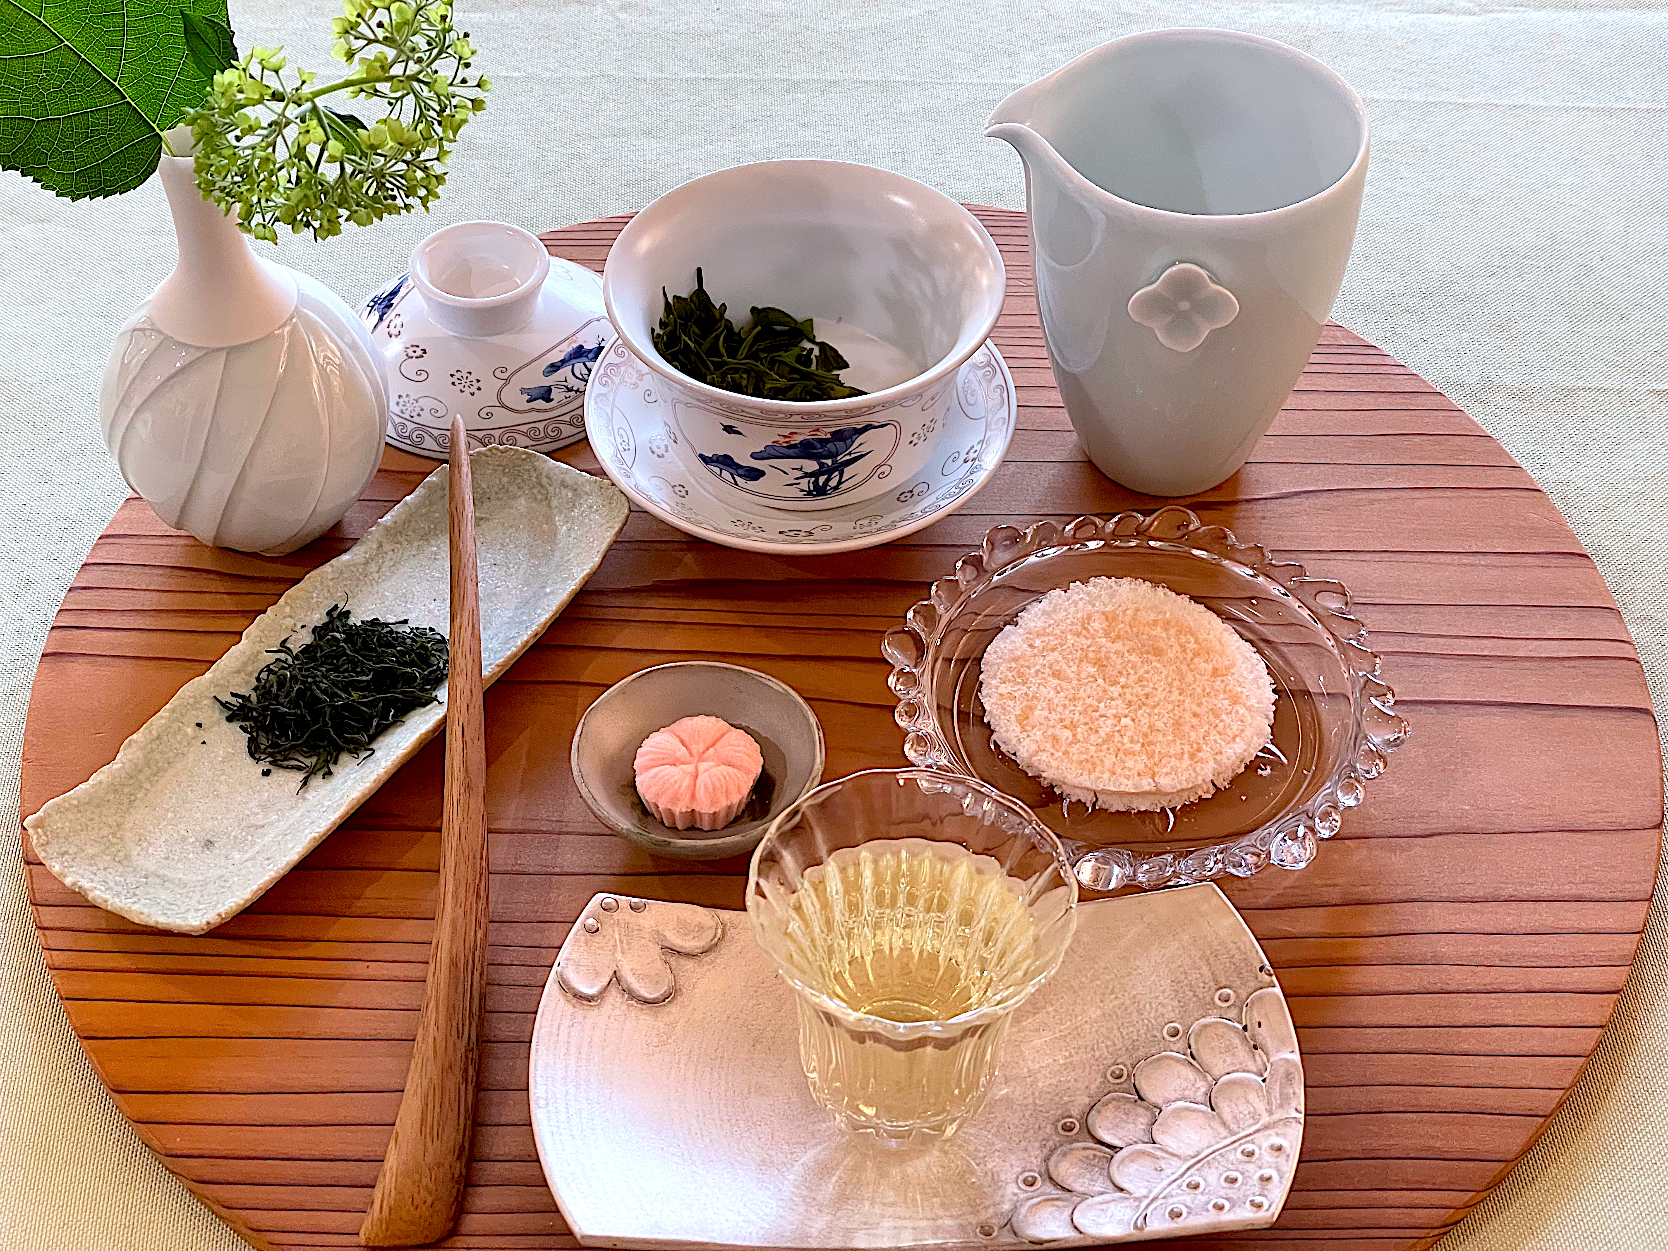 お茶時間🍃珍しい中国緑茶を頂いたので🍃